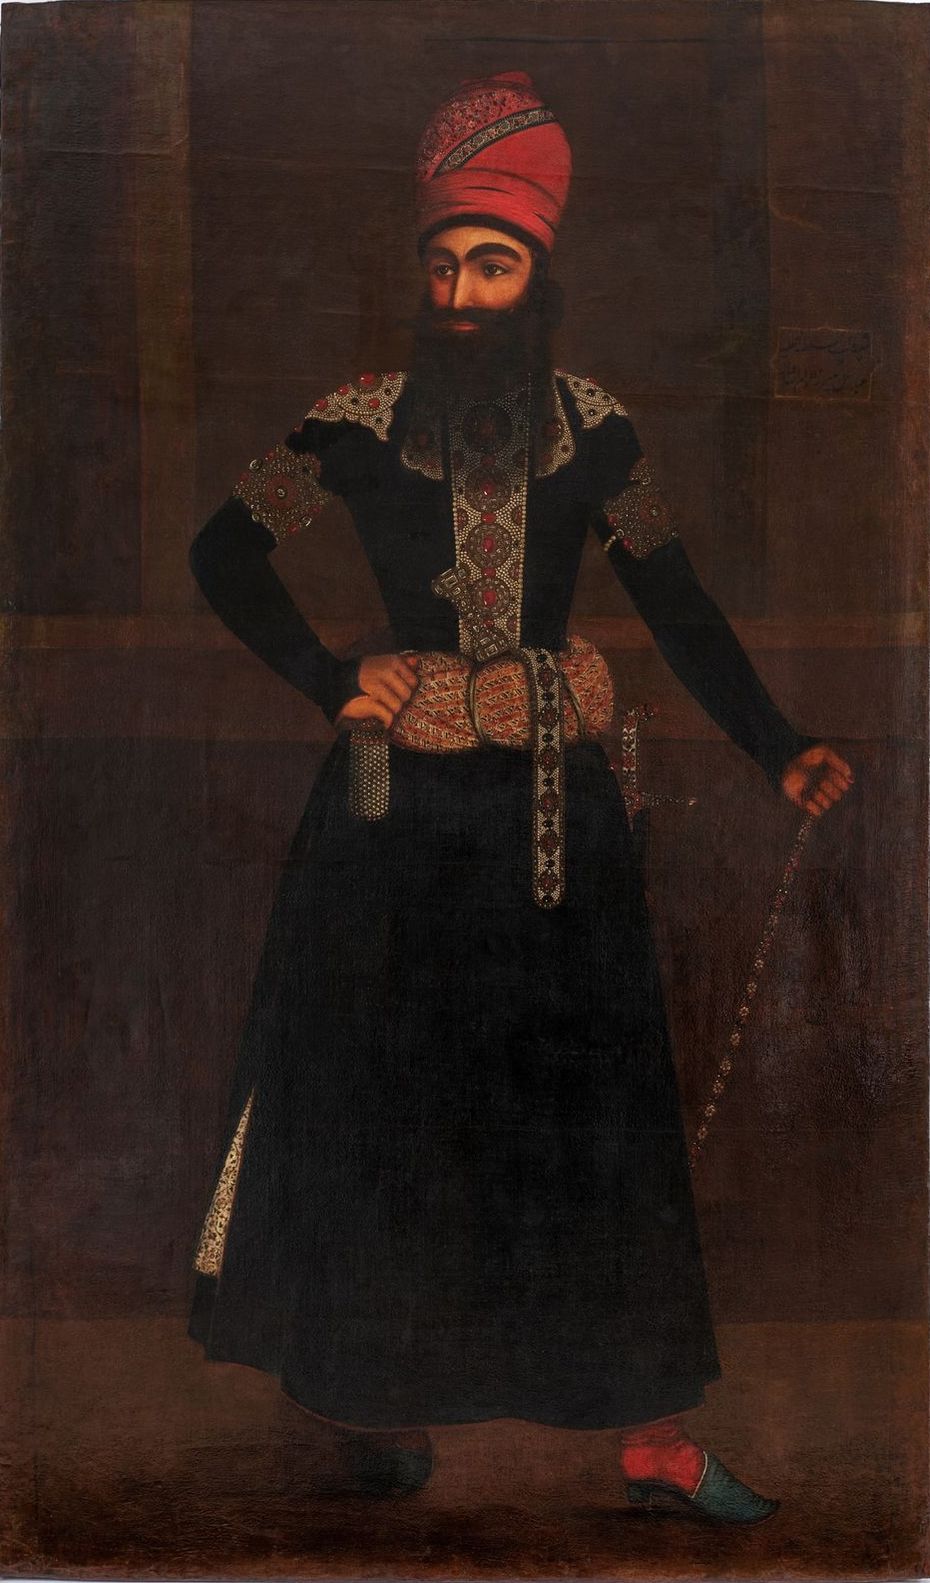 Ил. 4. Алла-Вирди Афшар. Портрет Аббас Мирзы. 1-я пол. XIX в. © Государственный музей Востока